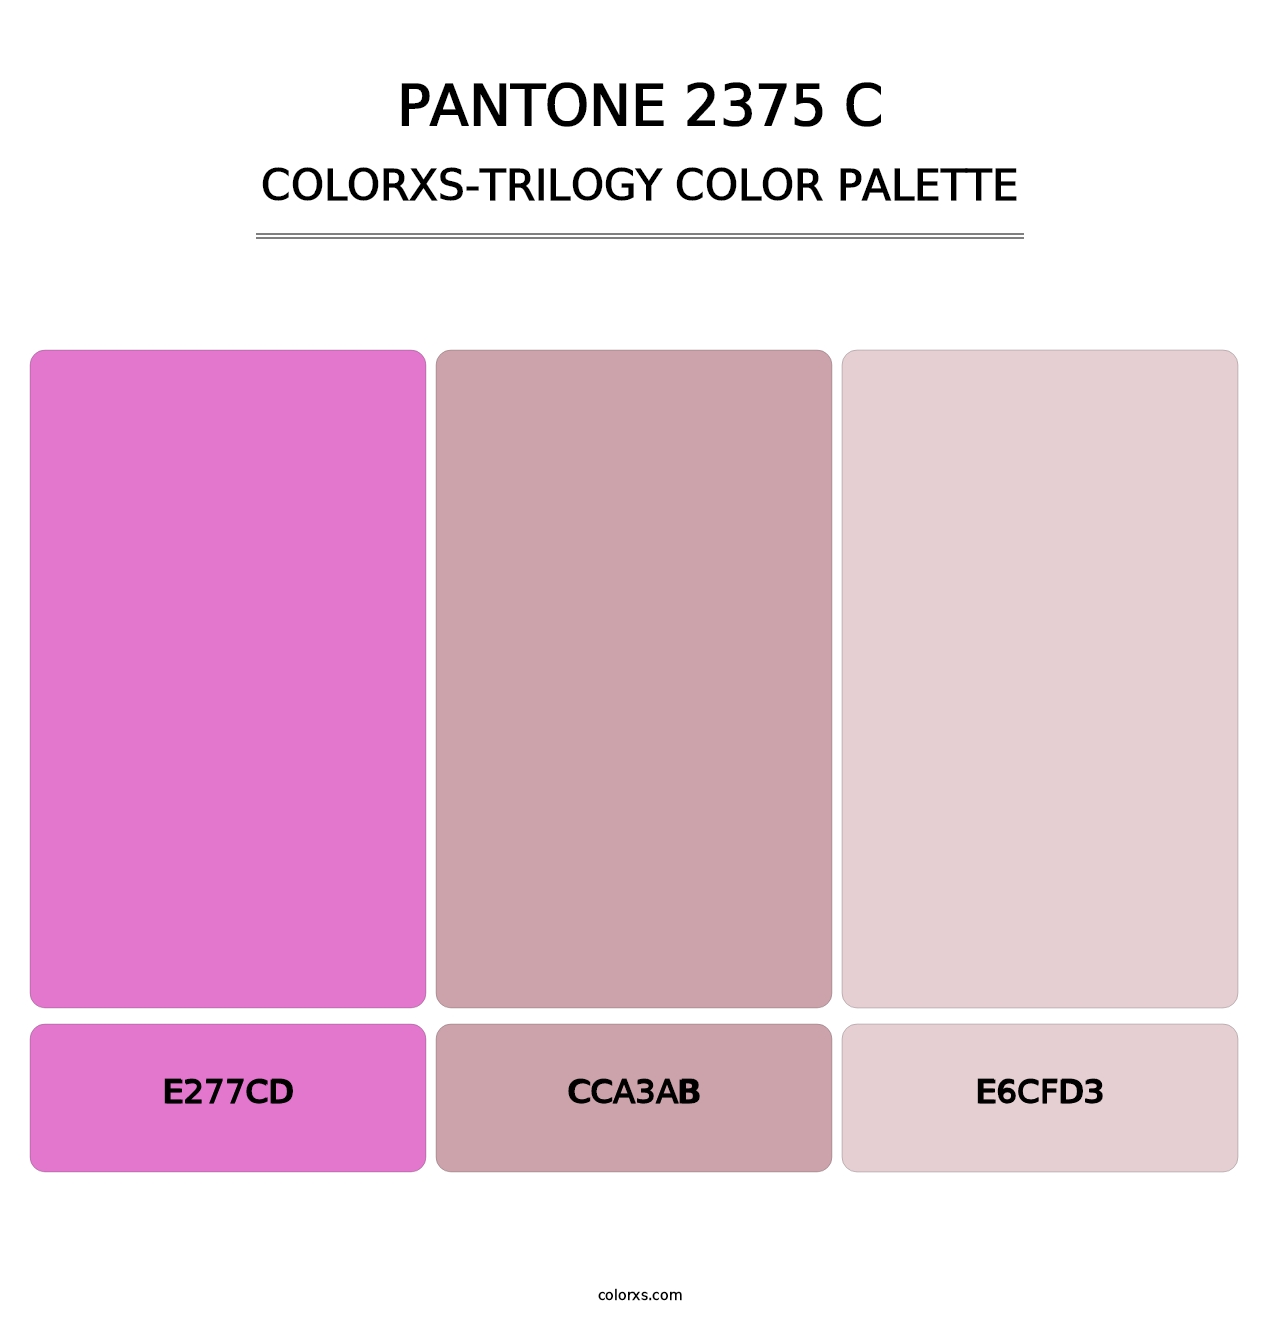 PANTONE 2375 C - Colorxs Trilogy Palette